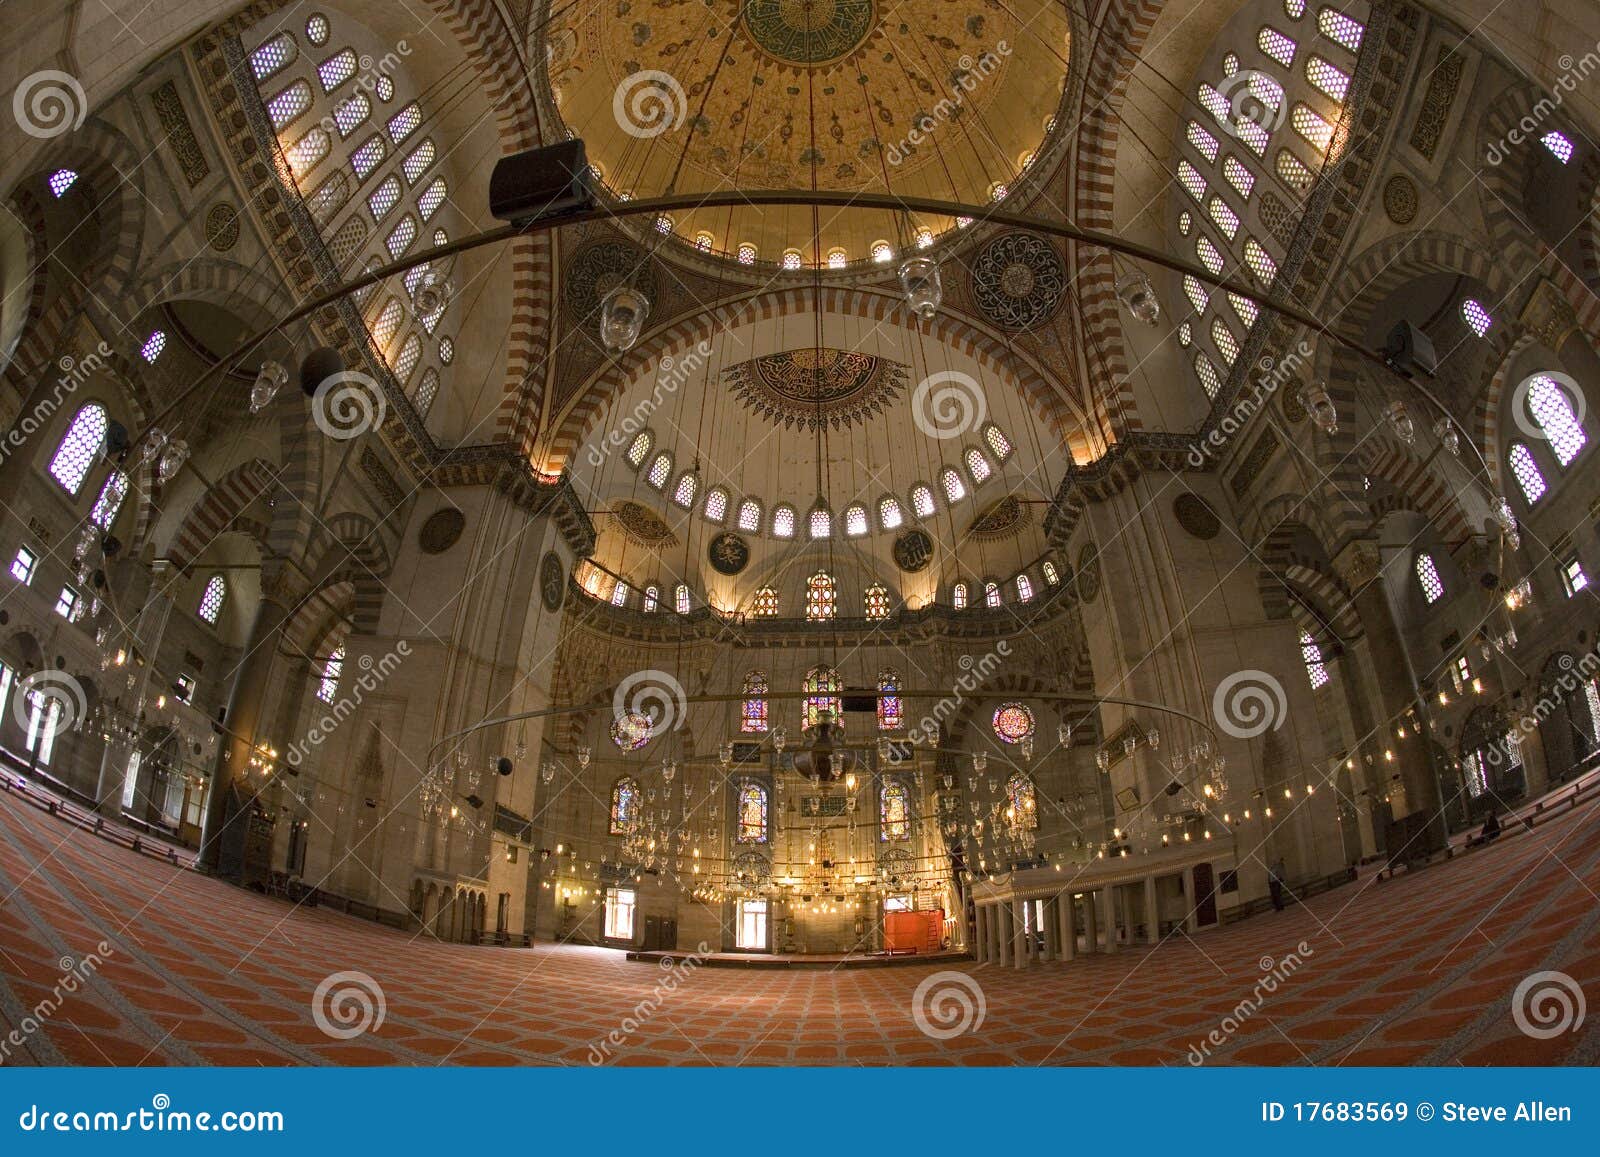 suleymaniye mosque - istanbul - turkey